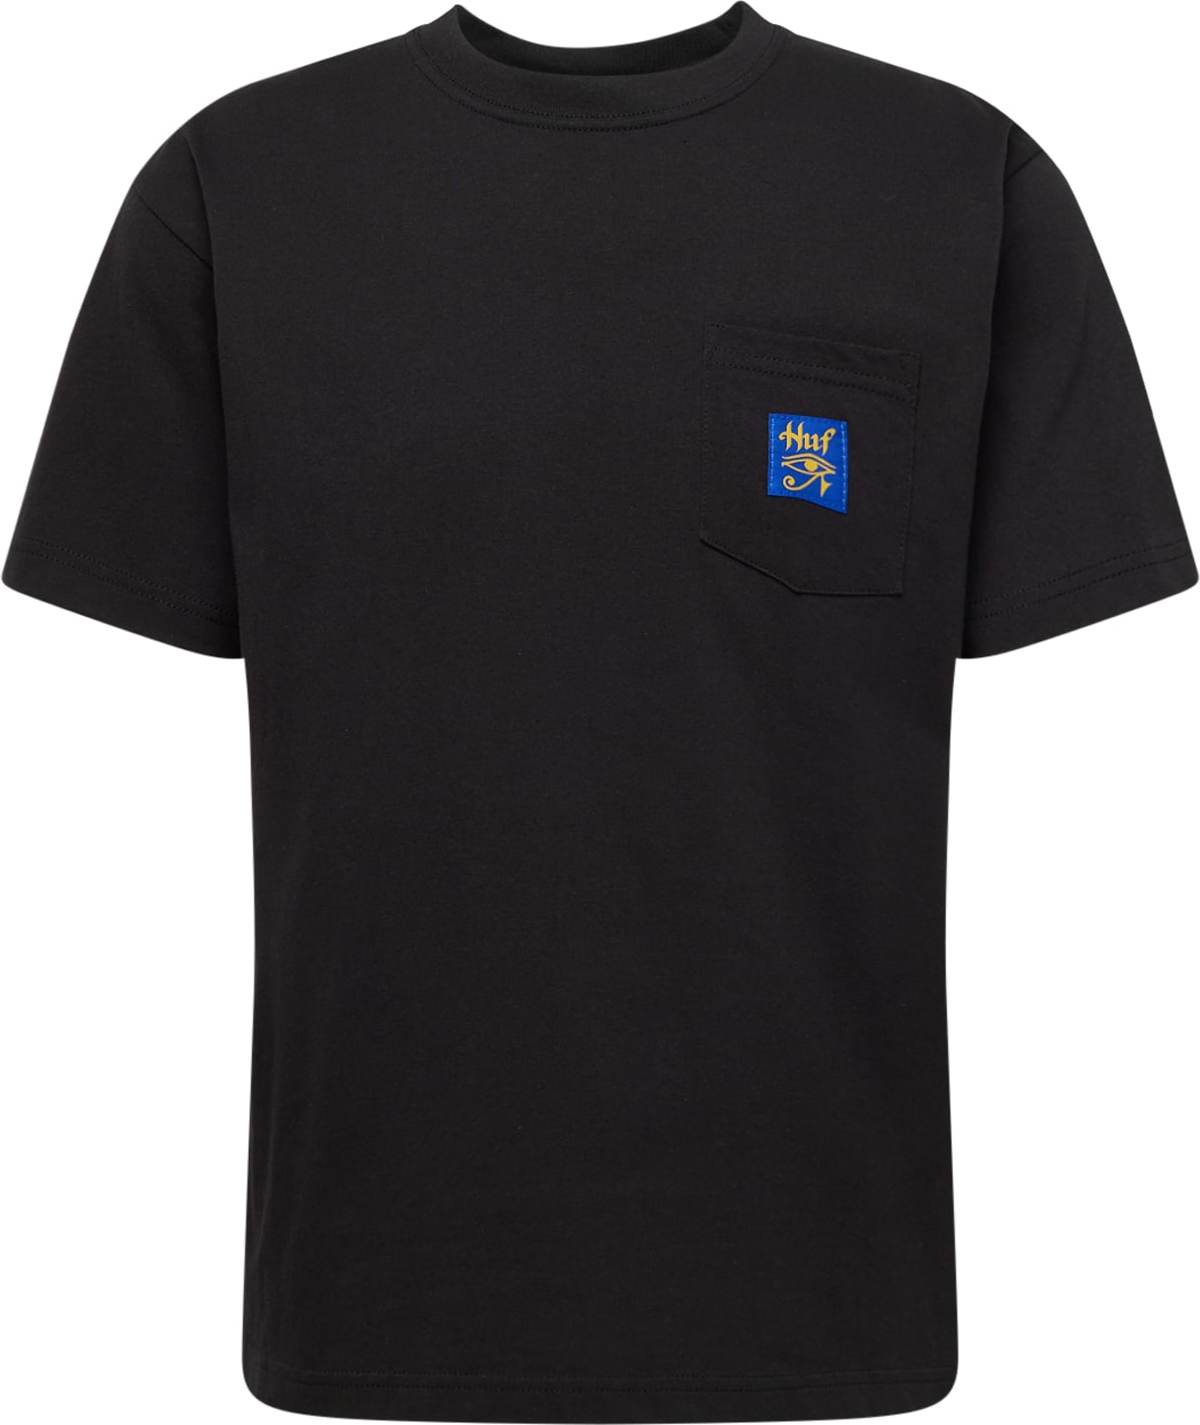 Tričko 'HORUS' HUF písková / modrá / černá